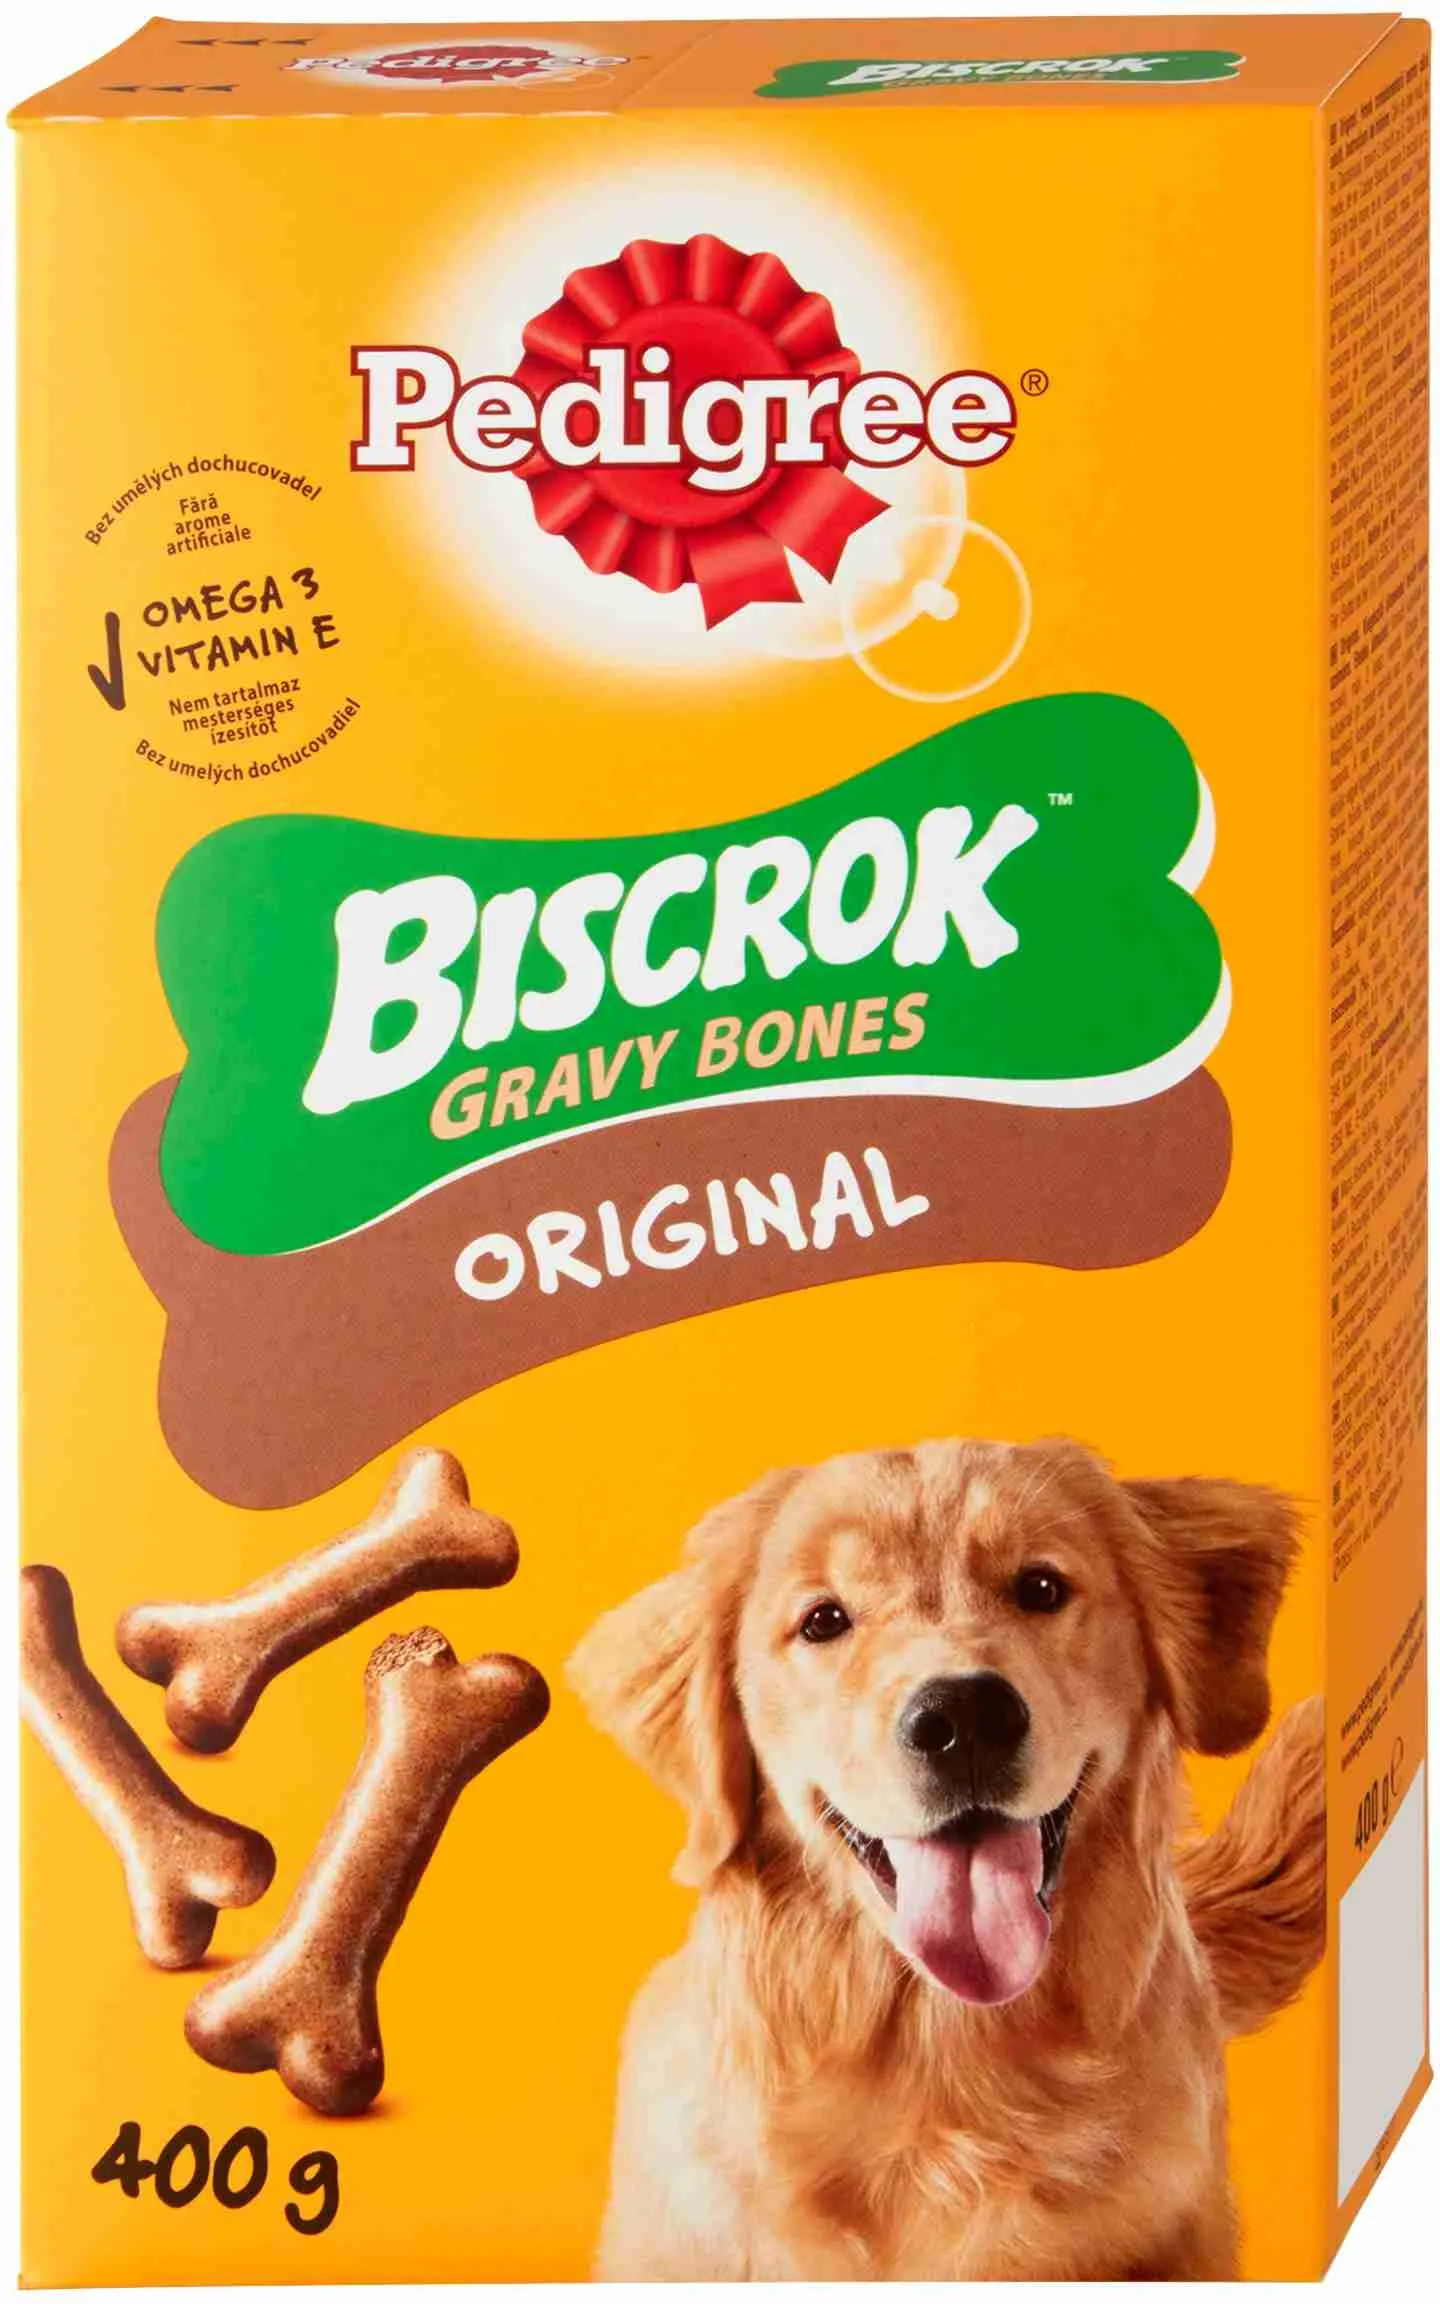 PEDIGREE pochúťKa Biscrok Gravy bones 400g 1×400 g, pochúťka pre psy